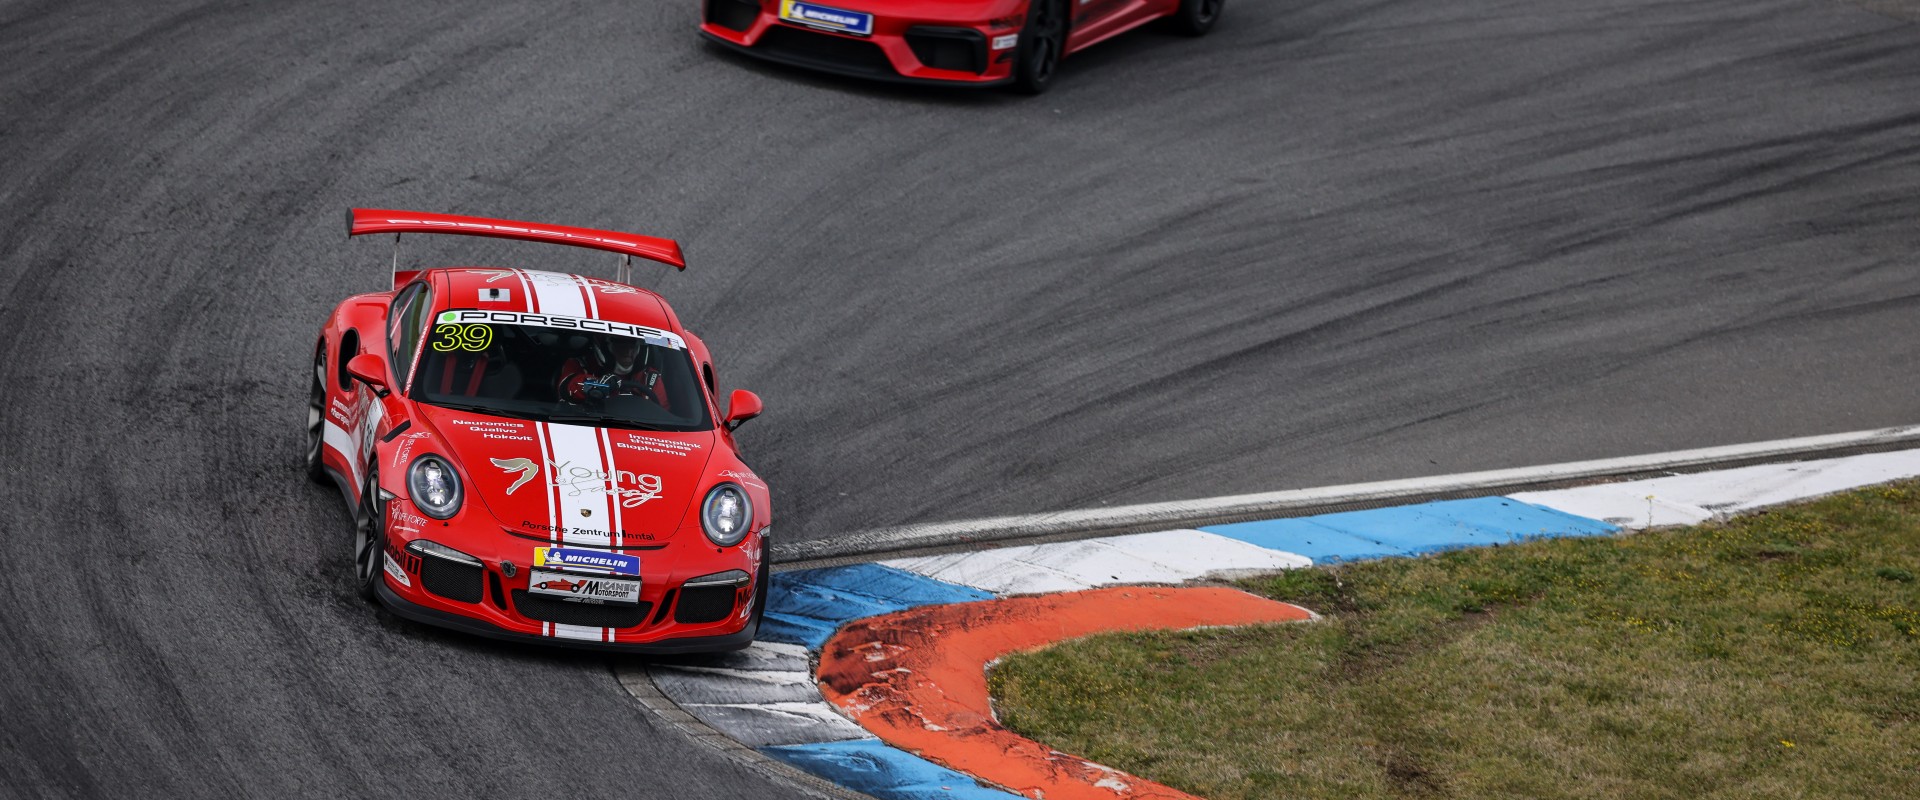 Šmarda se na Nürburgringu postaví nabité konkurenci i nejnovější „zbrani“ od Porsche